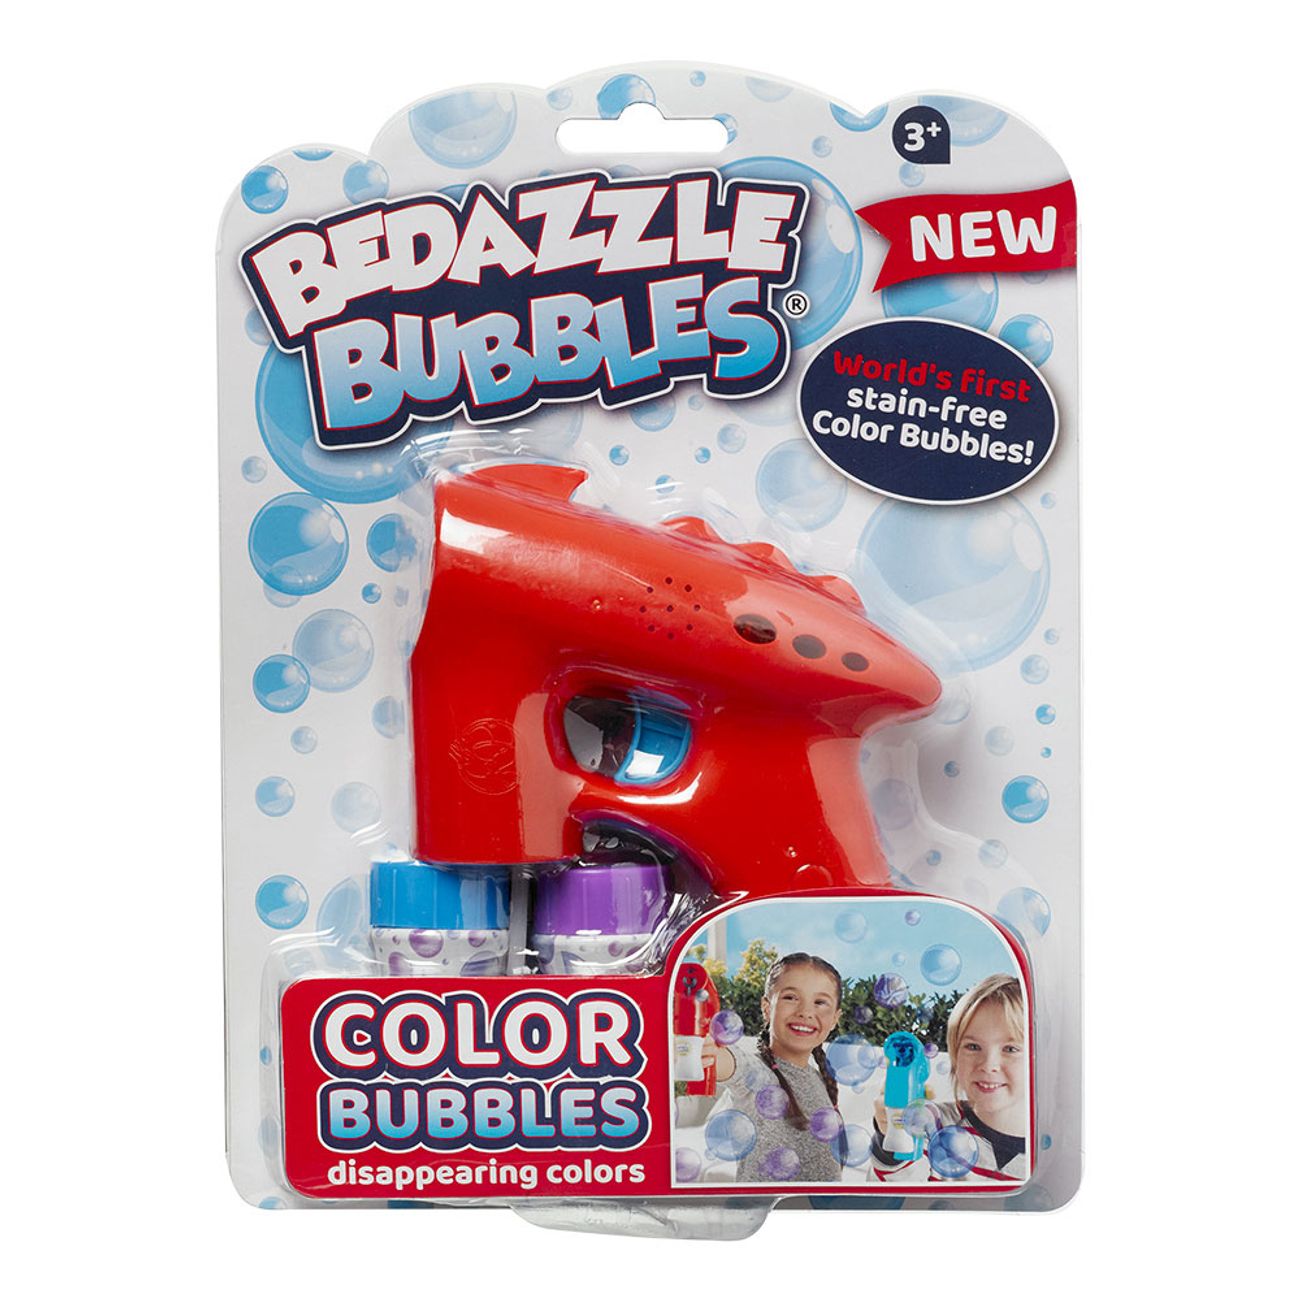 bedazzle-bubbles-sapbubbelpistol-3